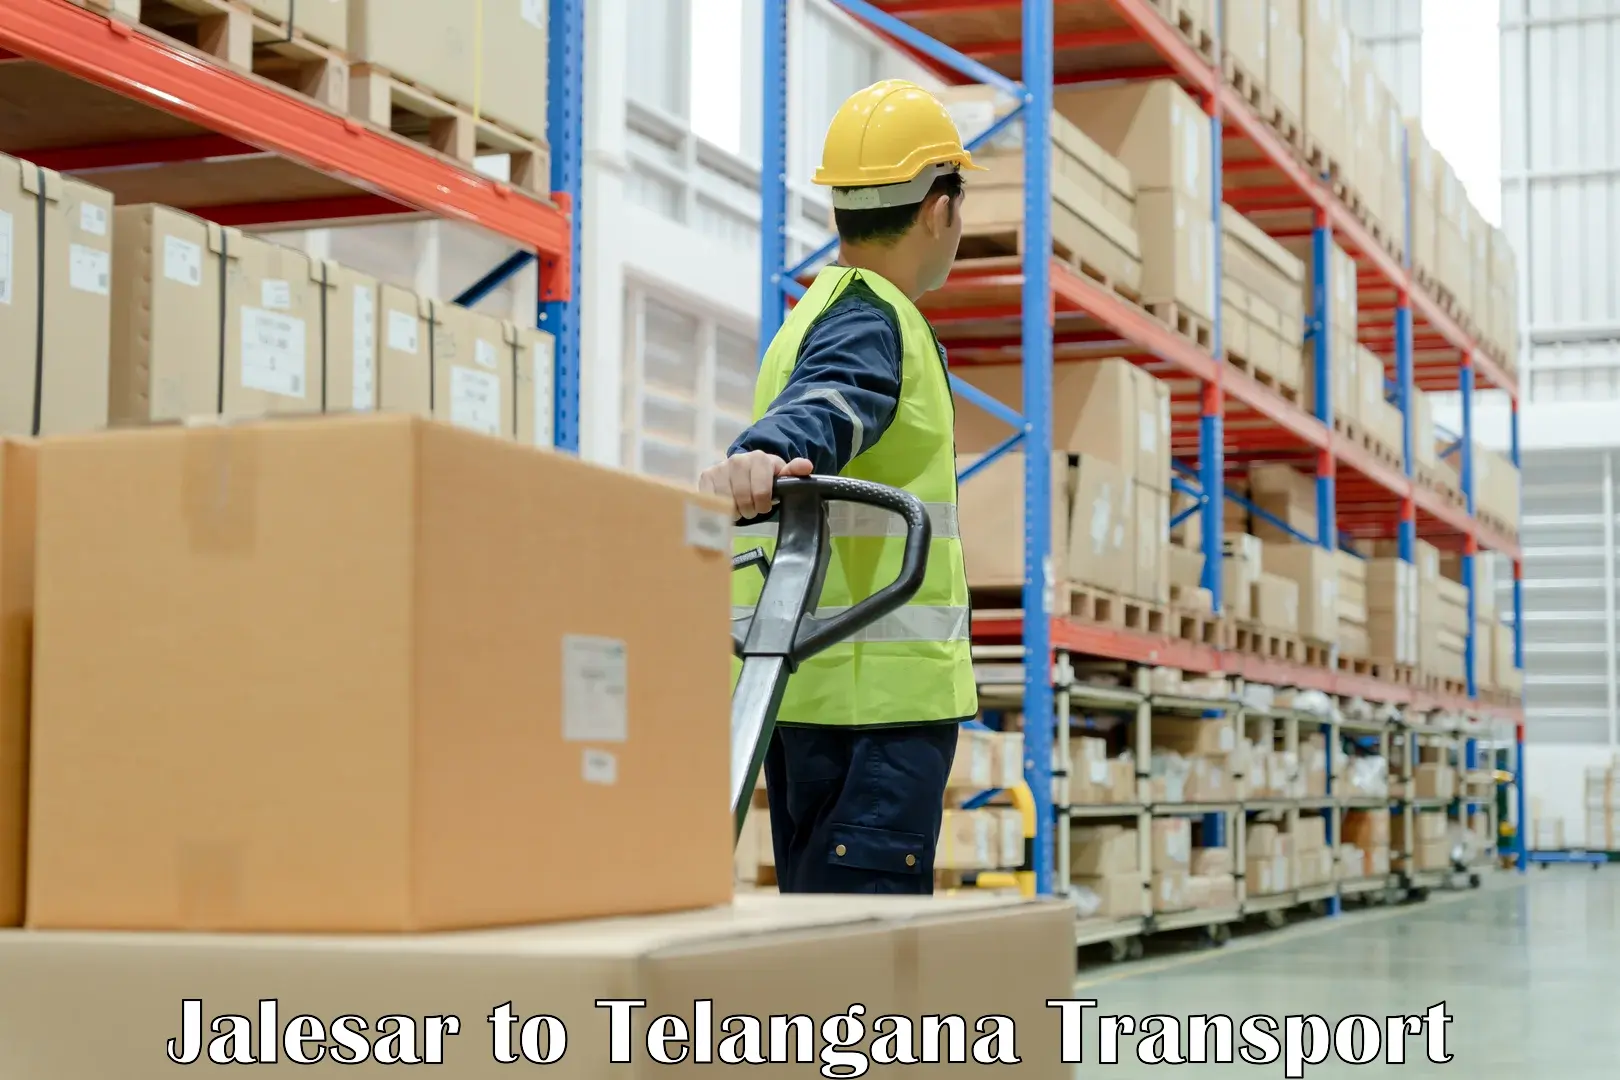 Cargo transportation services Jalesar to Odela